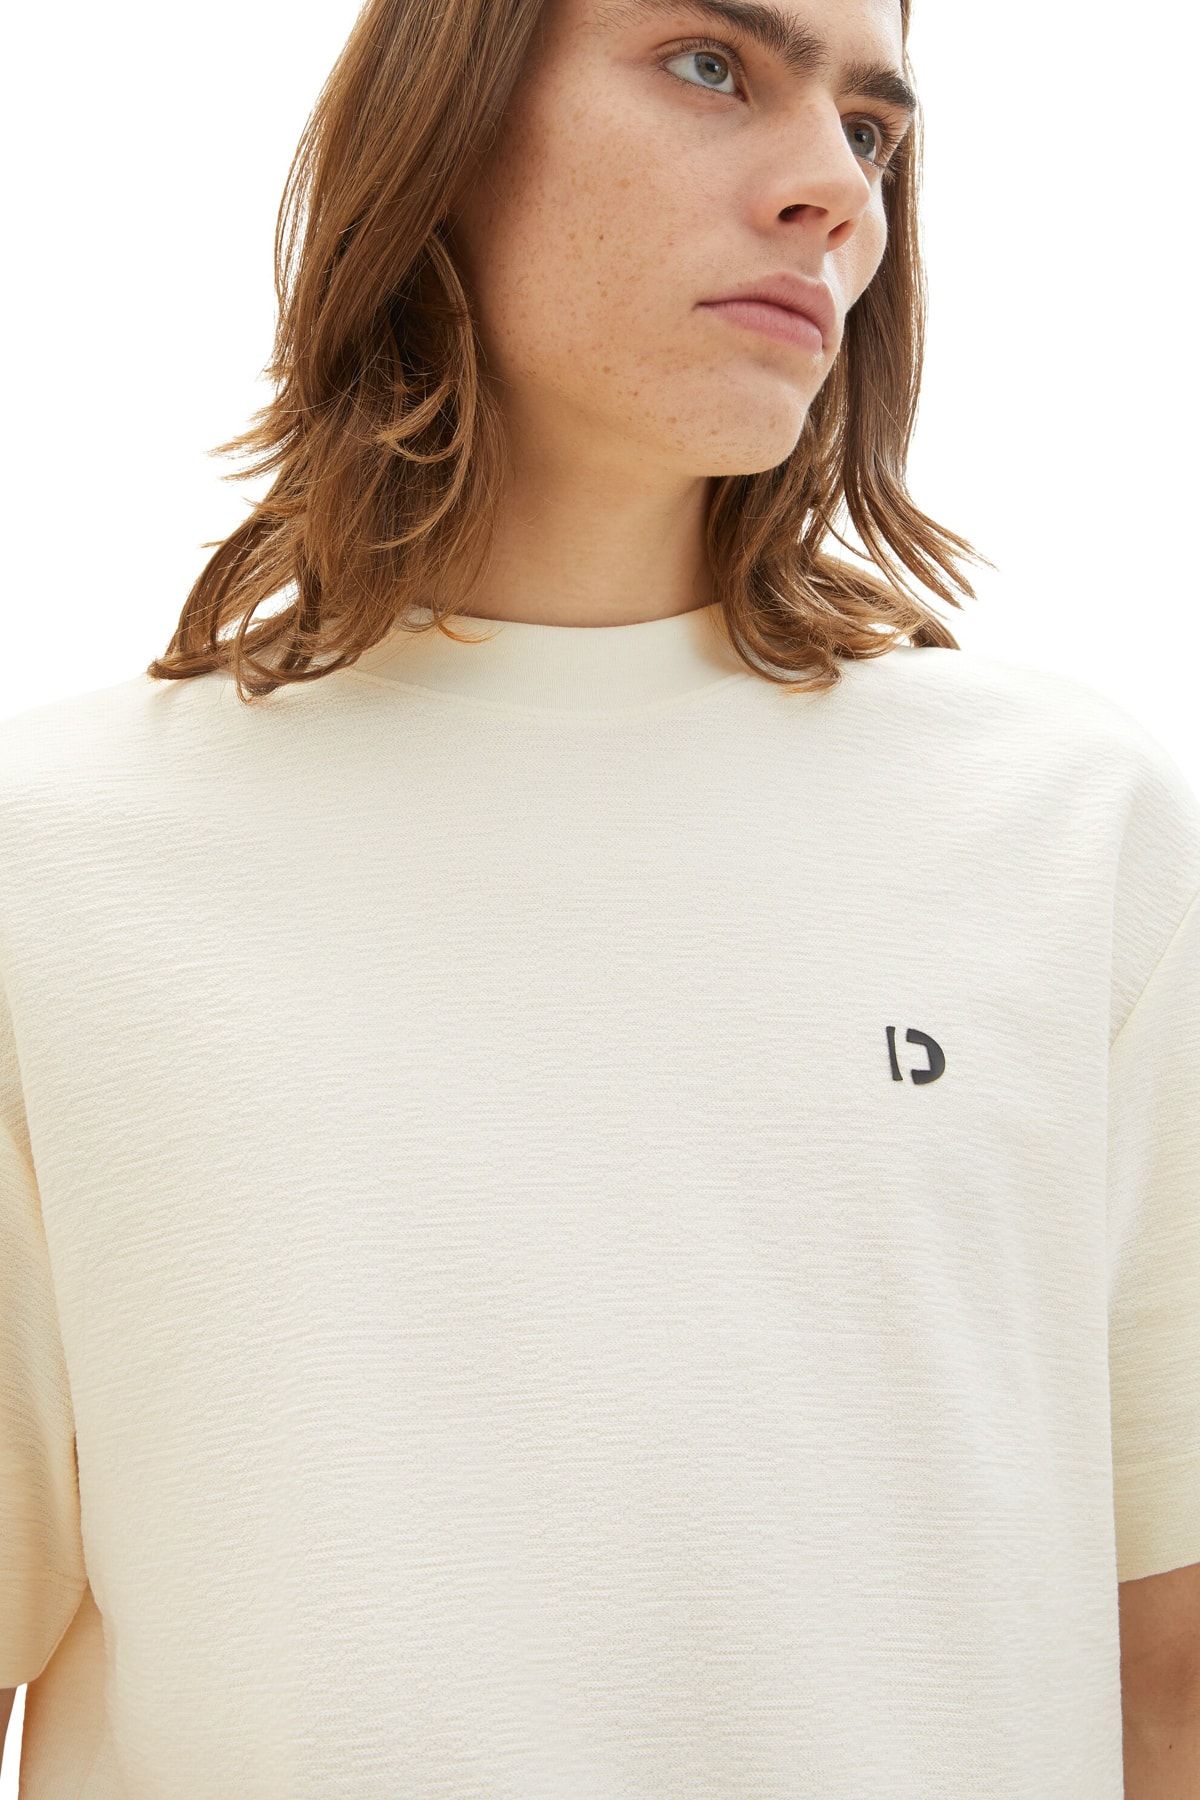 Tom Tailor Denim Men\'s Wool White T-Shirt - Trendyol